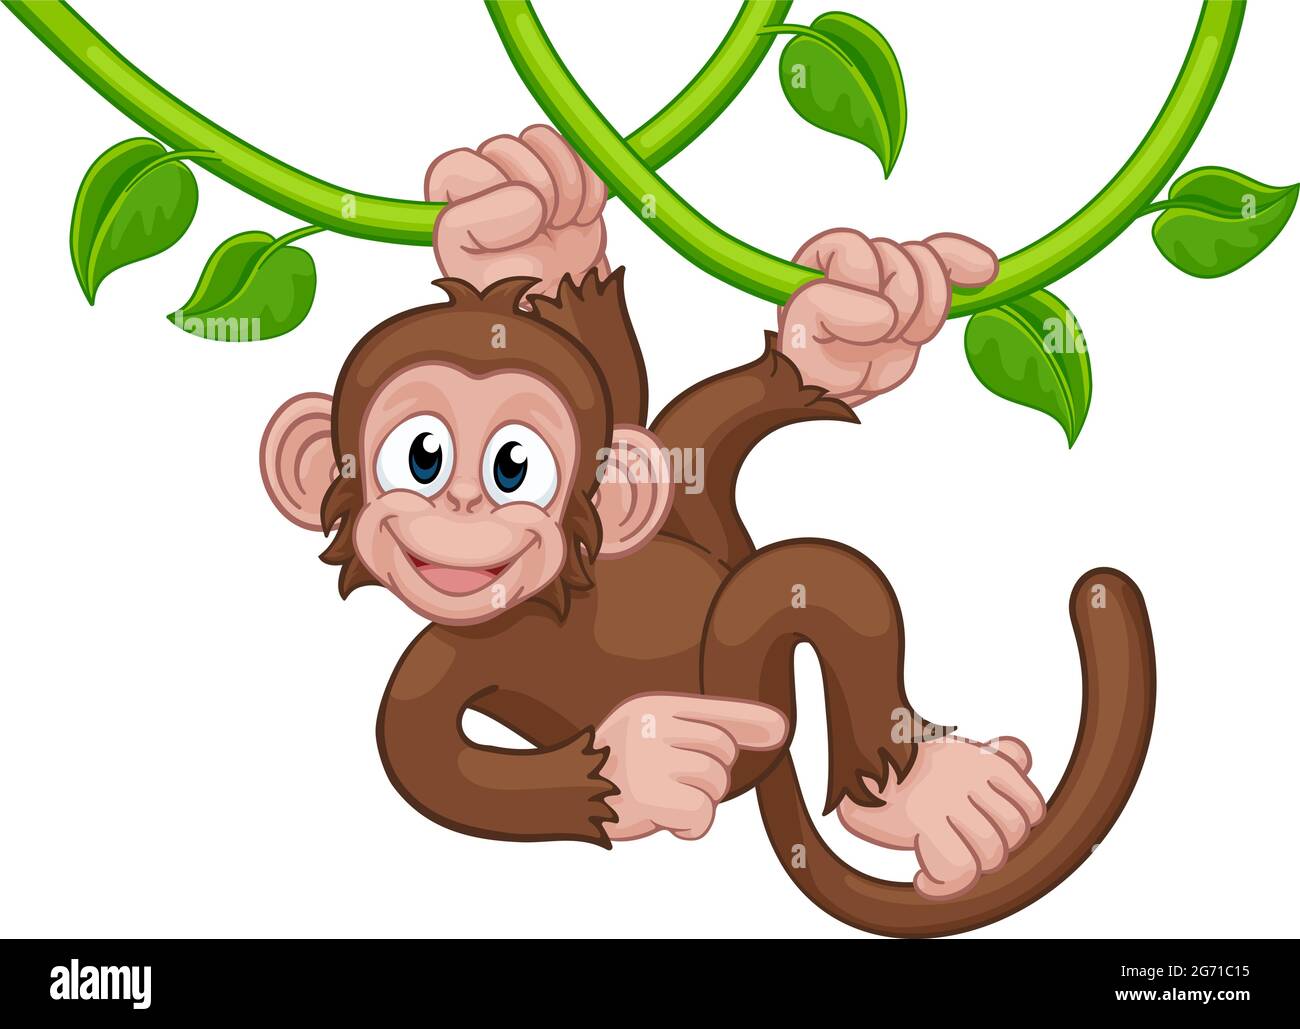 A chimp can sing. Обезьянка поет. Клипарт орангутанг на дереве рисунок. Обезьяна Синг Синг. Обезьян с травой рисунок.